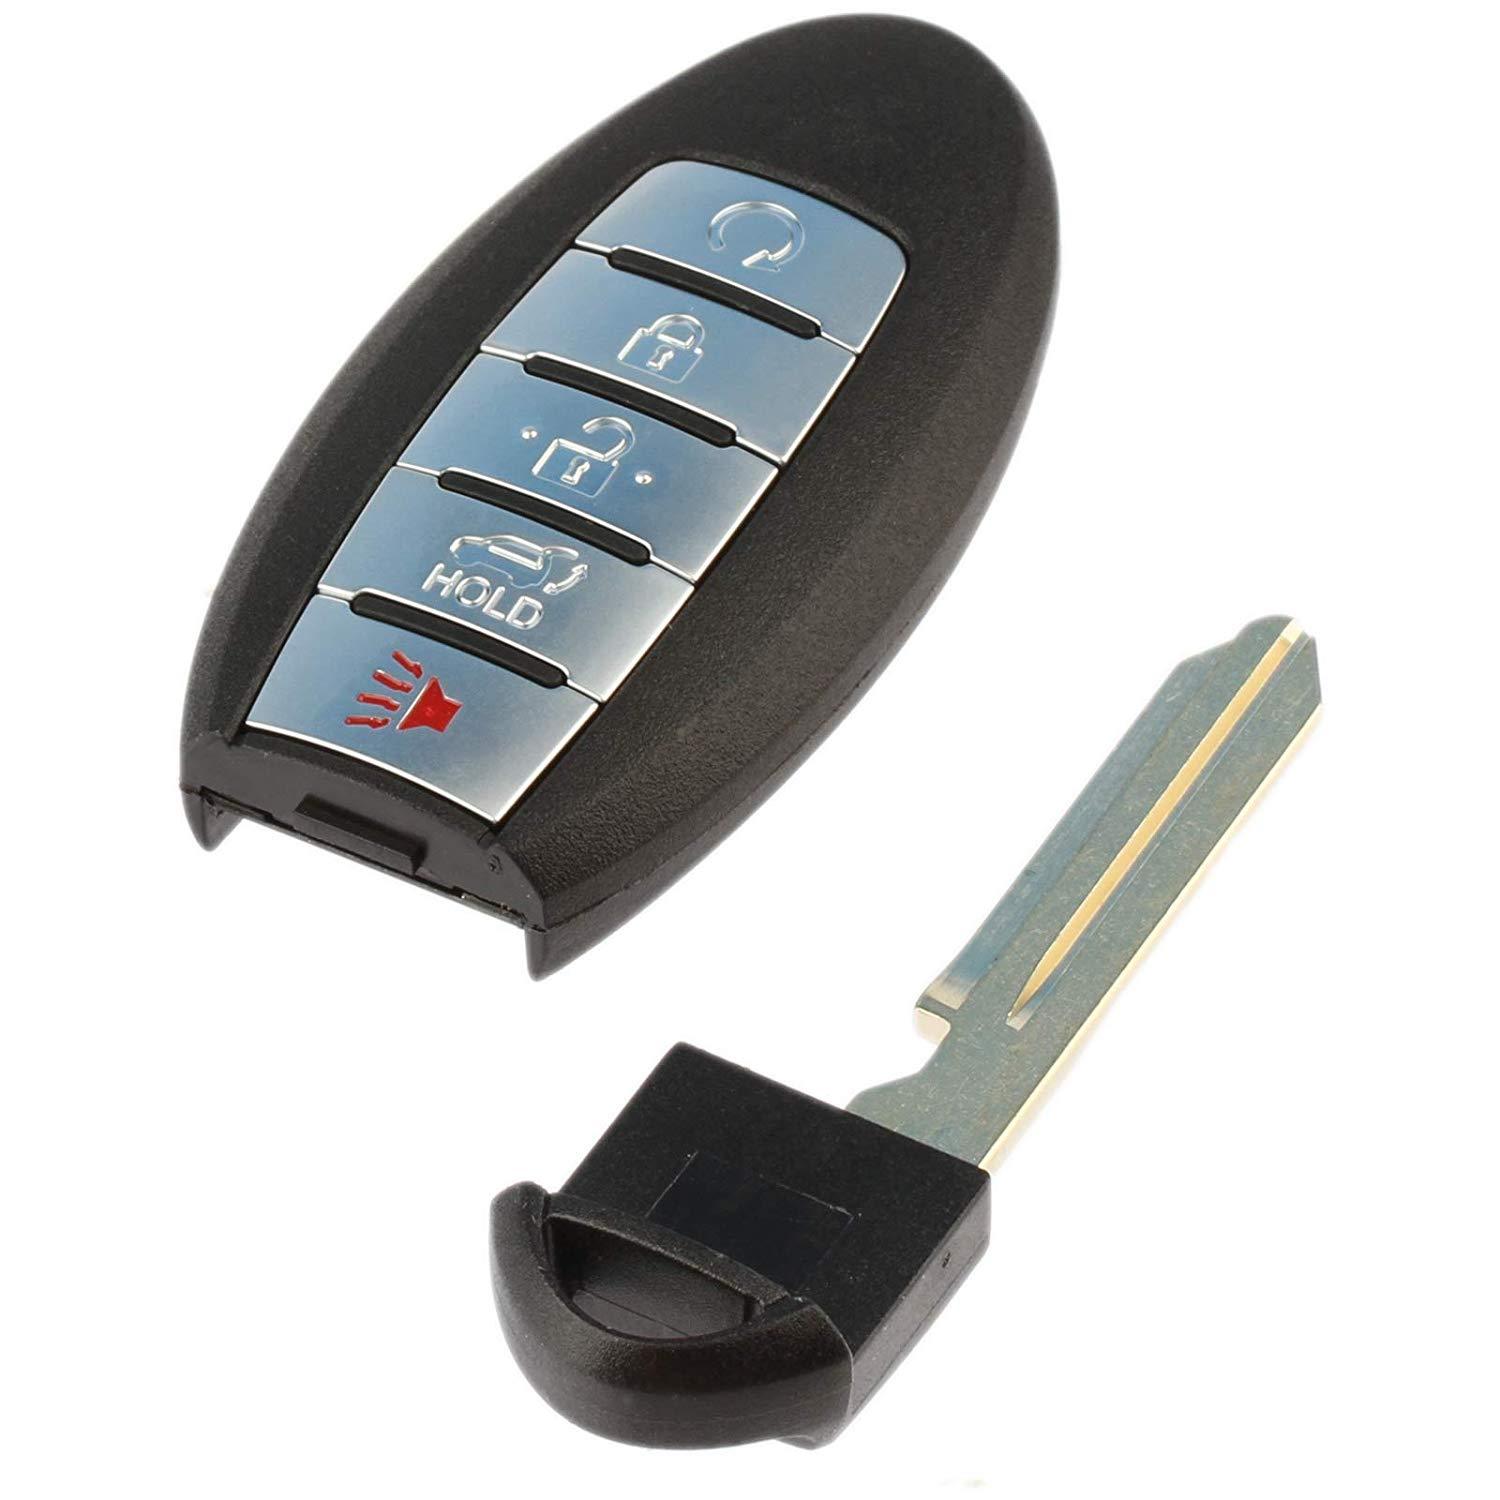 Car Remote Key for Nissan Patrol 5 Buttons 433.92MHz 10pcs/set